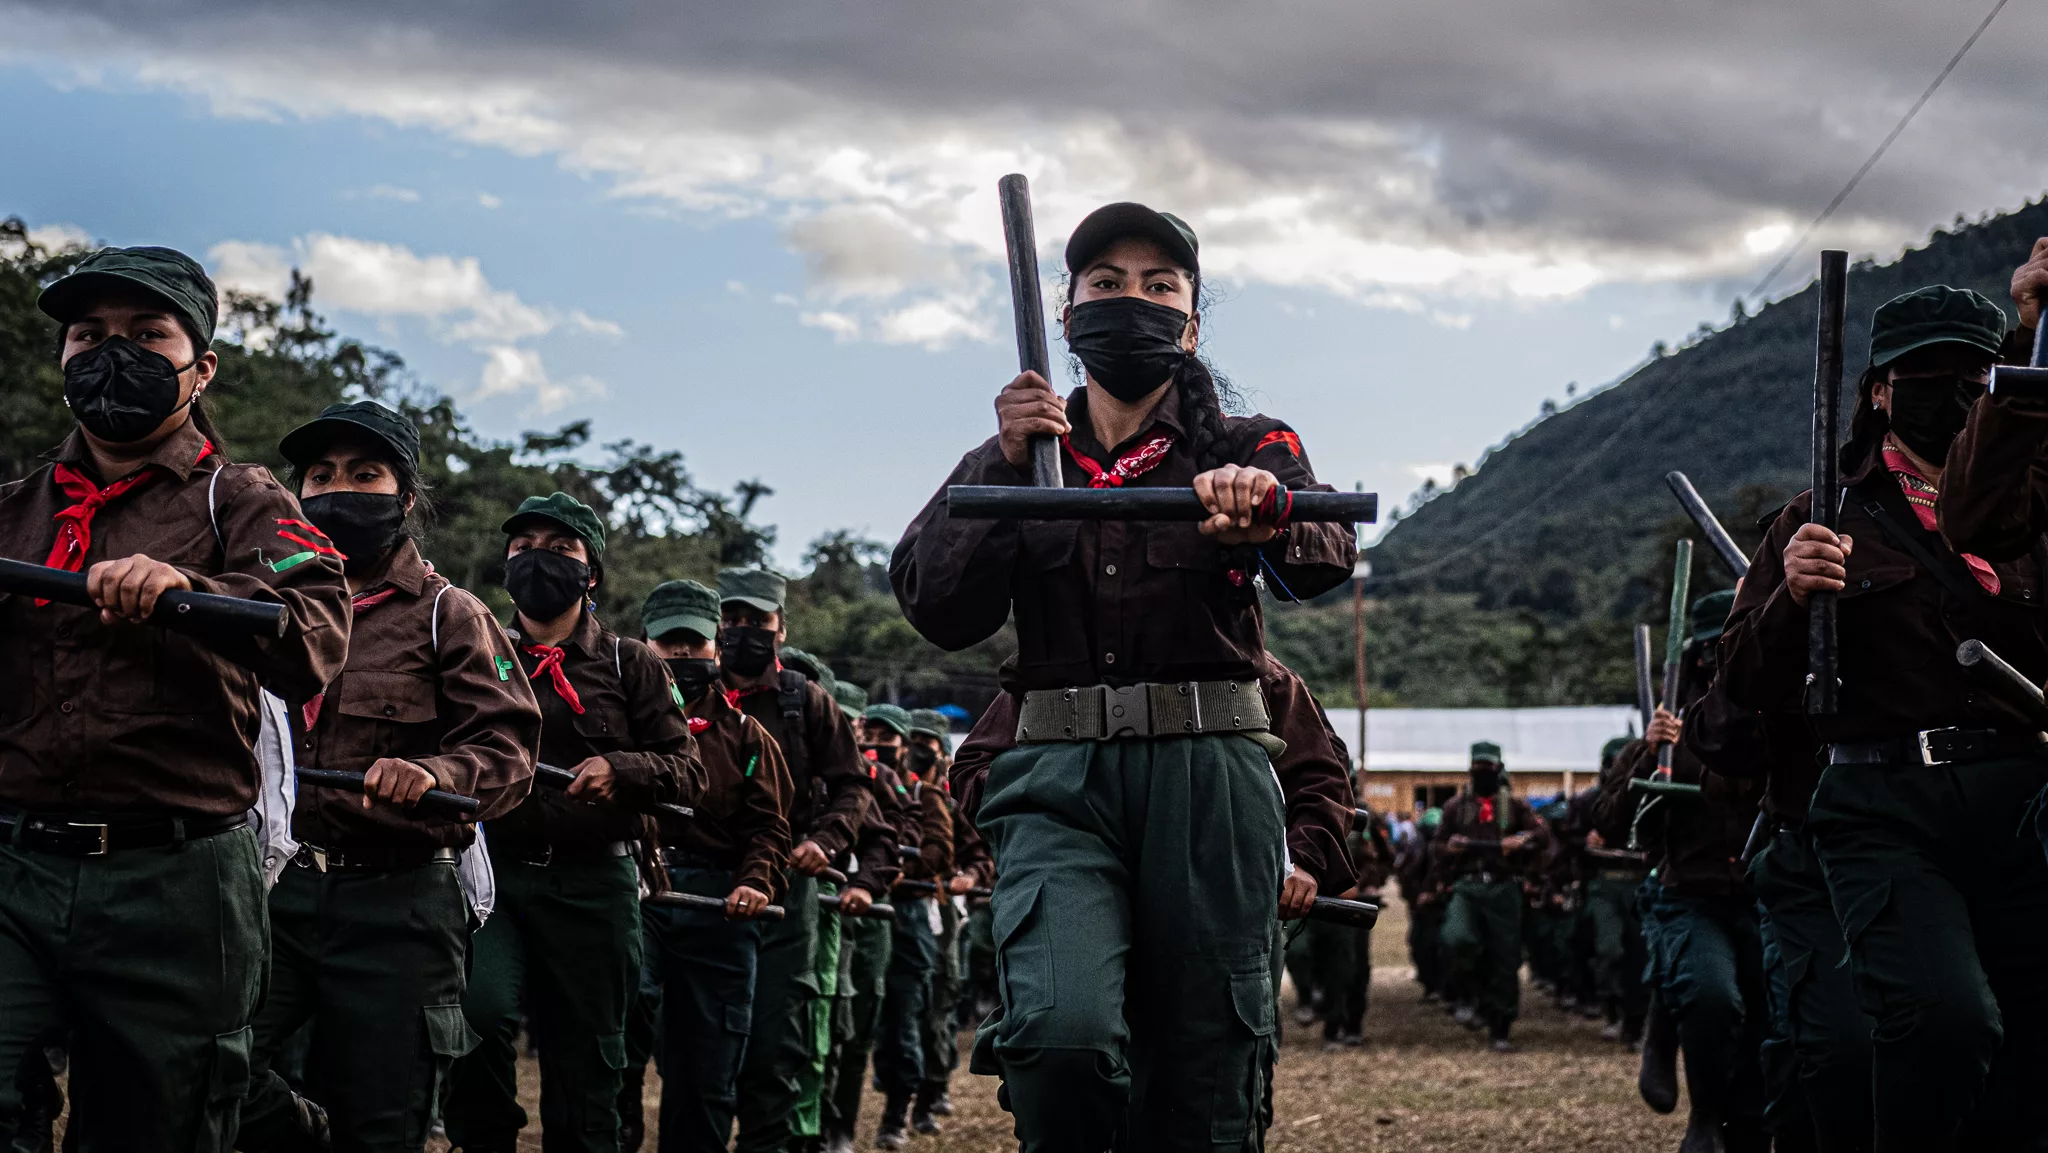 Entre nubes y rebeliones: Crónica de un viaje a los territorios zapatistas